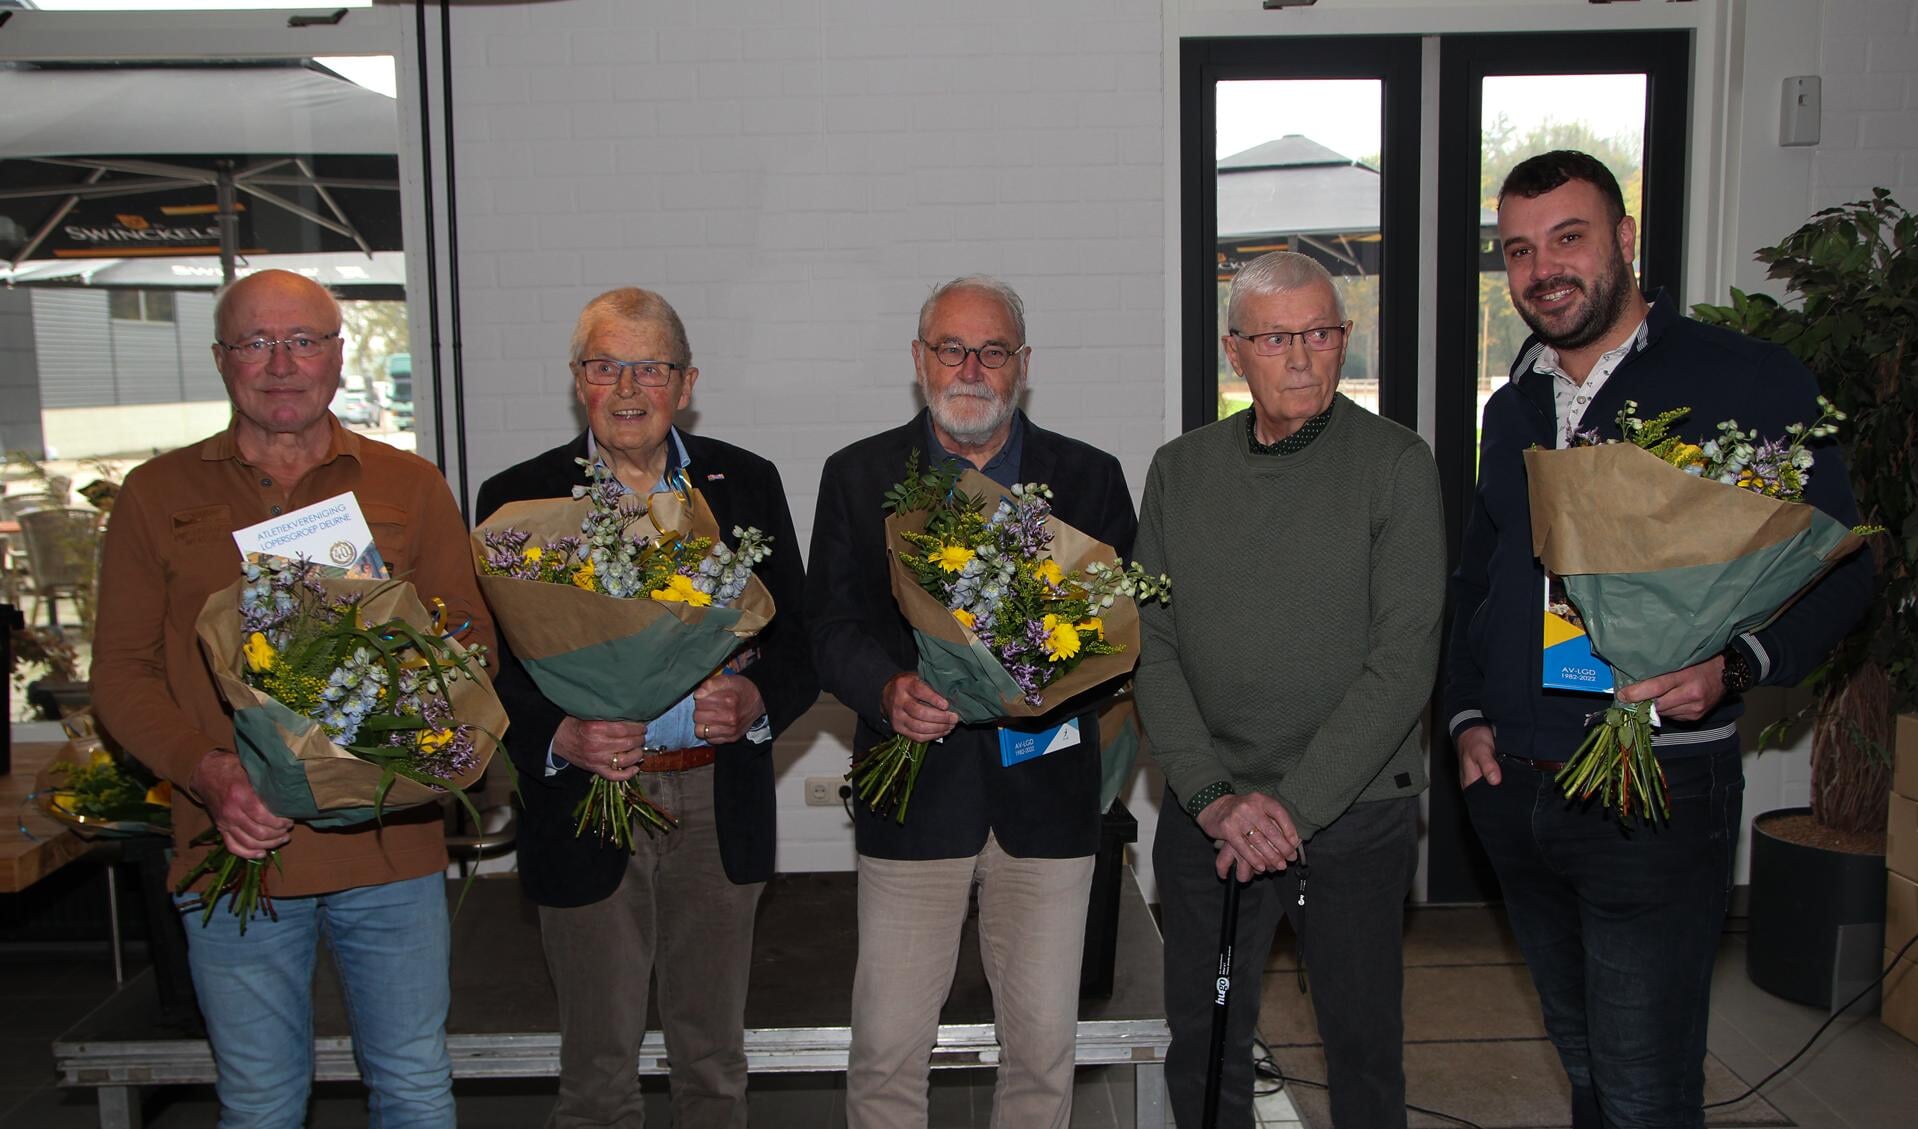  De jubilarissen van links naar rechts: Mart van Dam, Wim van Goch, Harrie van den Elsen, Edy Lenssen. Uiterst recht staat Rob van Berlo namens oprichter Tonny van Berlo. Op de foto ontbreken Johnny Vrijnsen en Cor Madou.